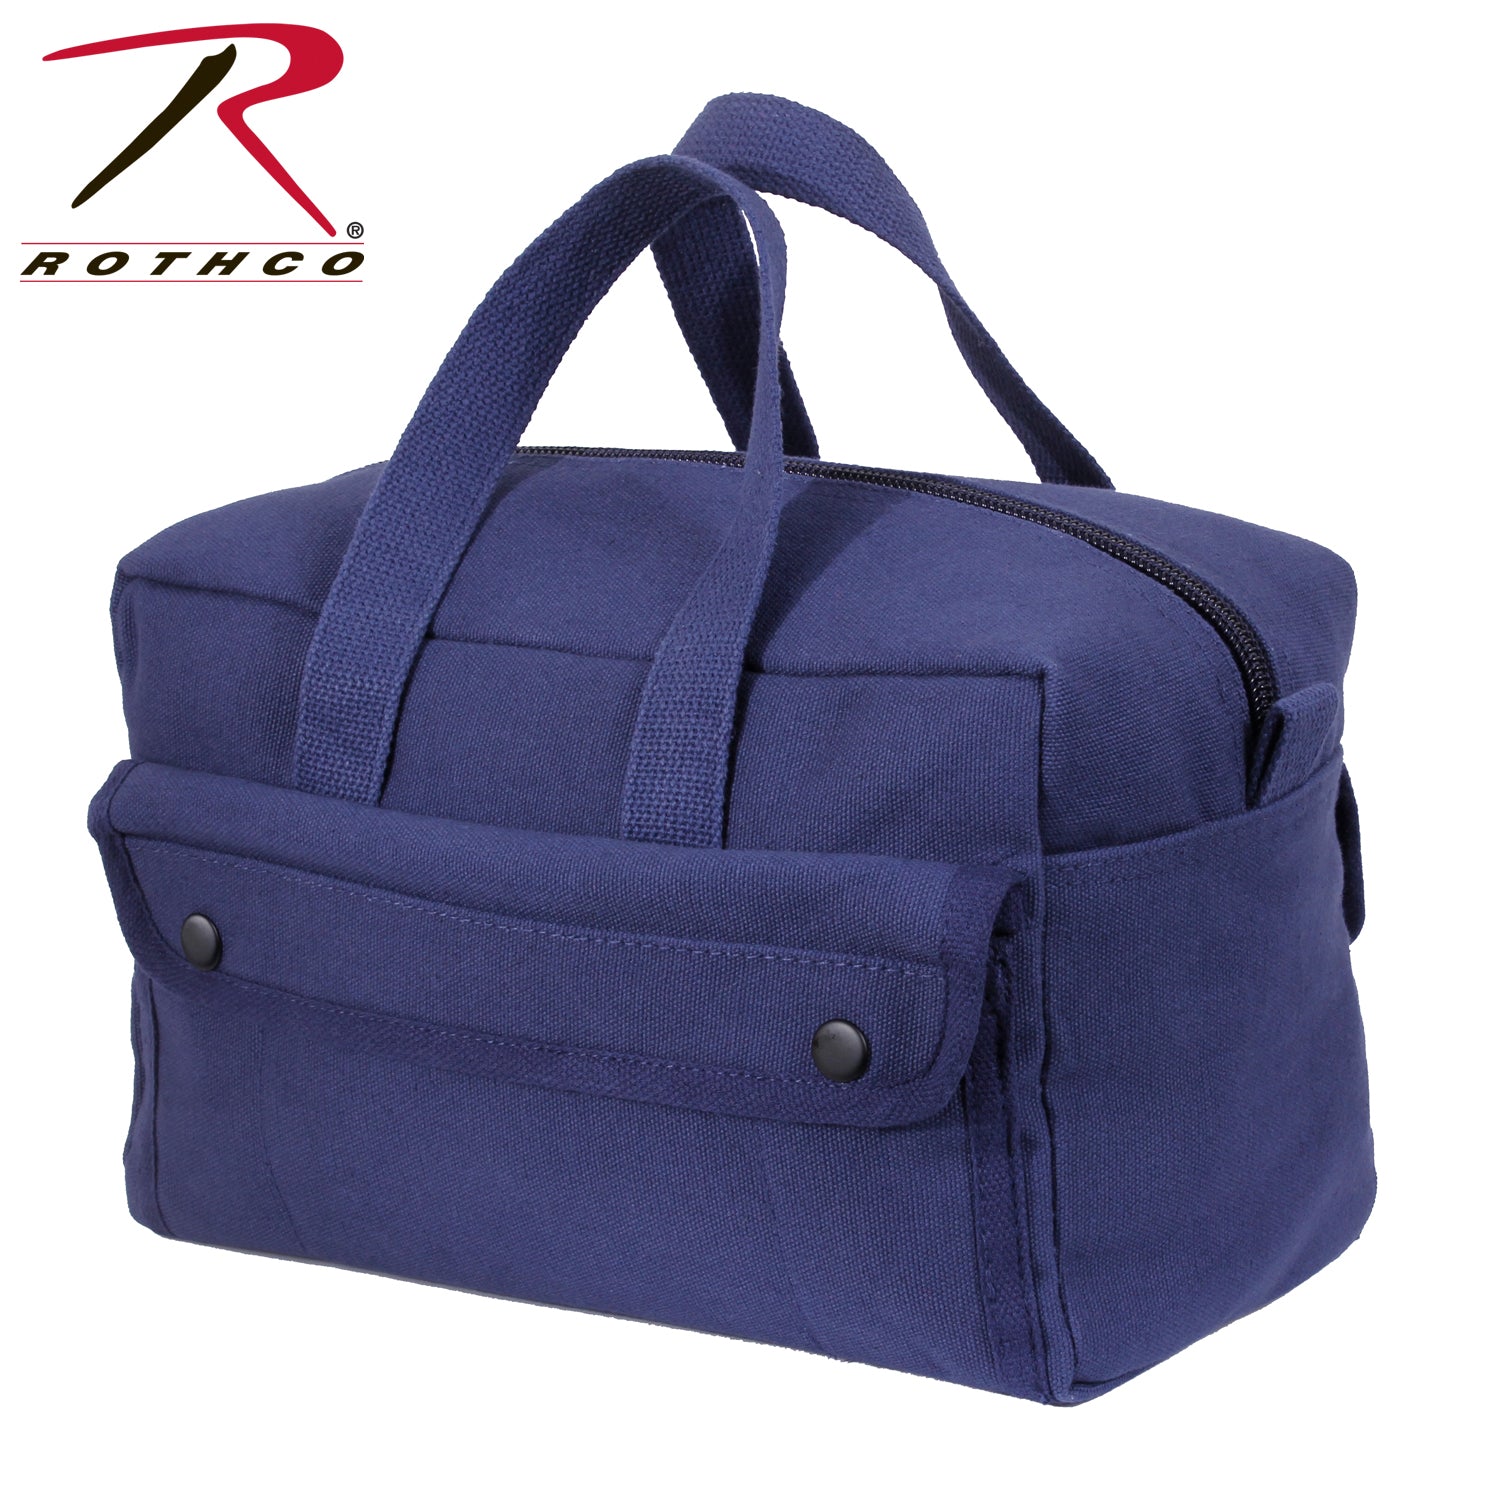 Rothco G.I. Type Mechanics Tool Bag